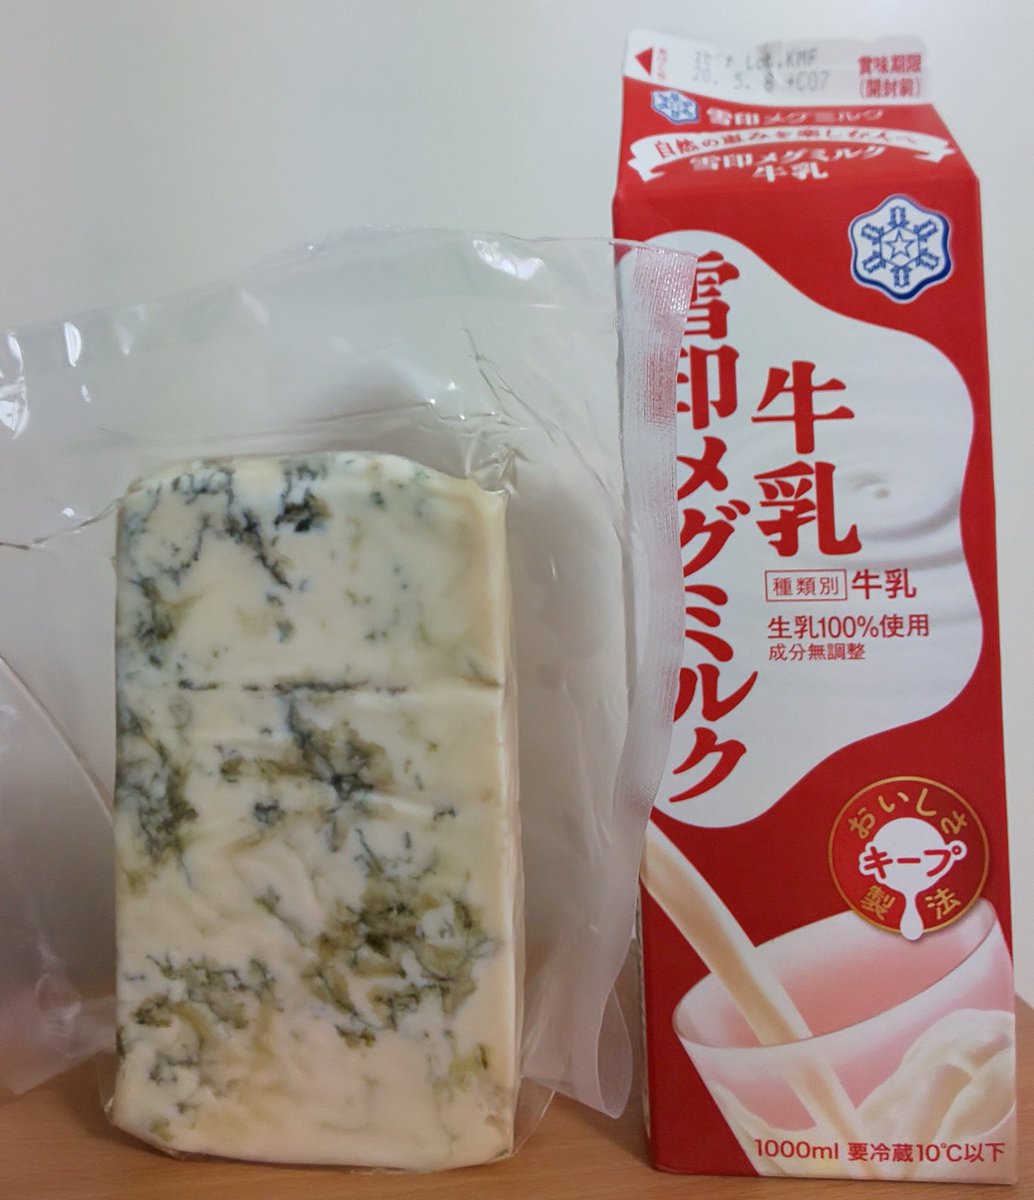 世界チーズ商会 @sekaicheese11 さんから届いたチーズ!ブルーチーズがでかい!牛乳パックとの比較を見て!でかい! 